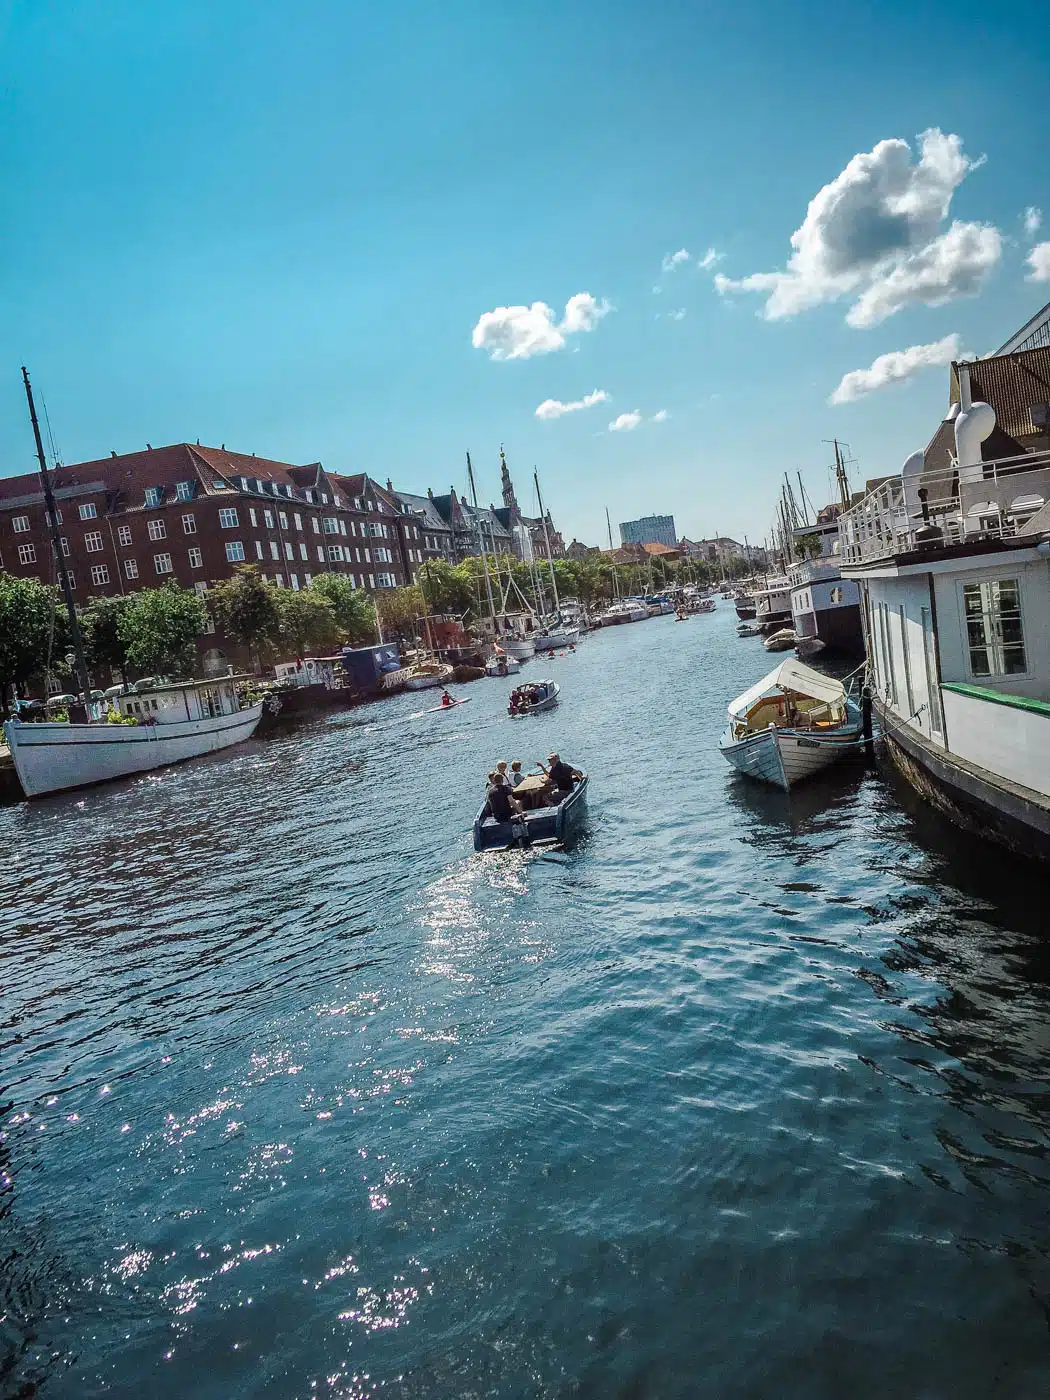 Summer Days by the Canal - Three Days in Copenhagen #traveldestinations #travel #denmark